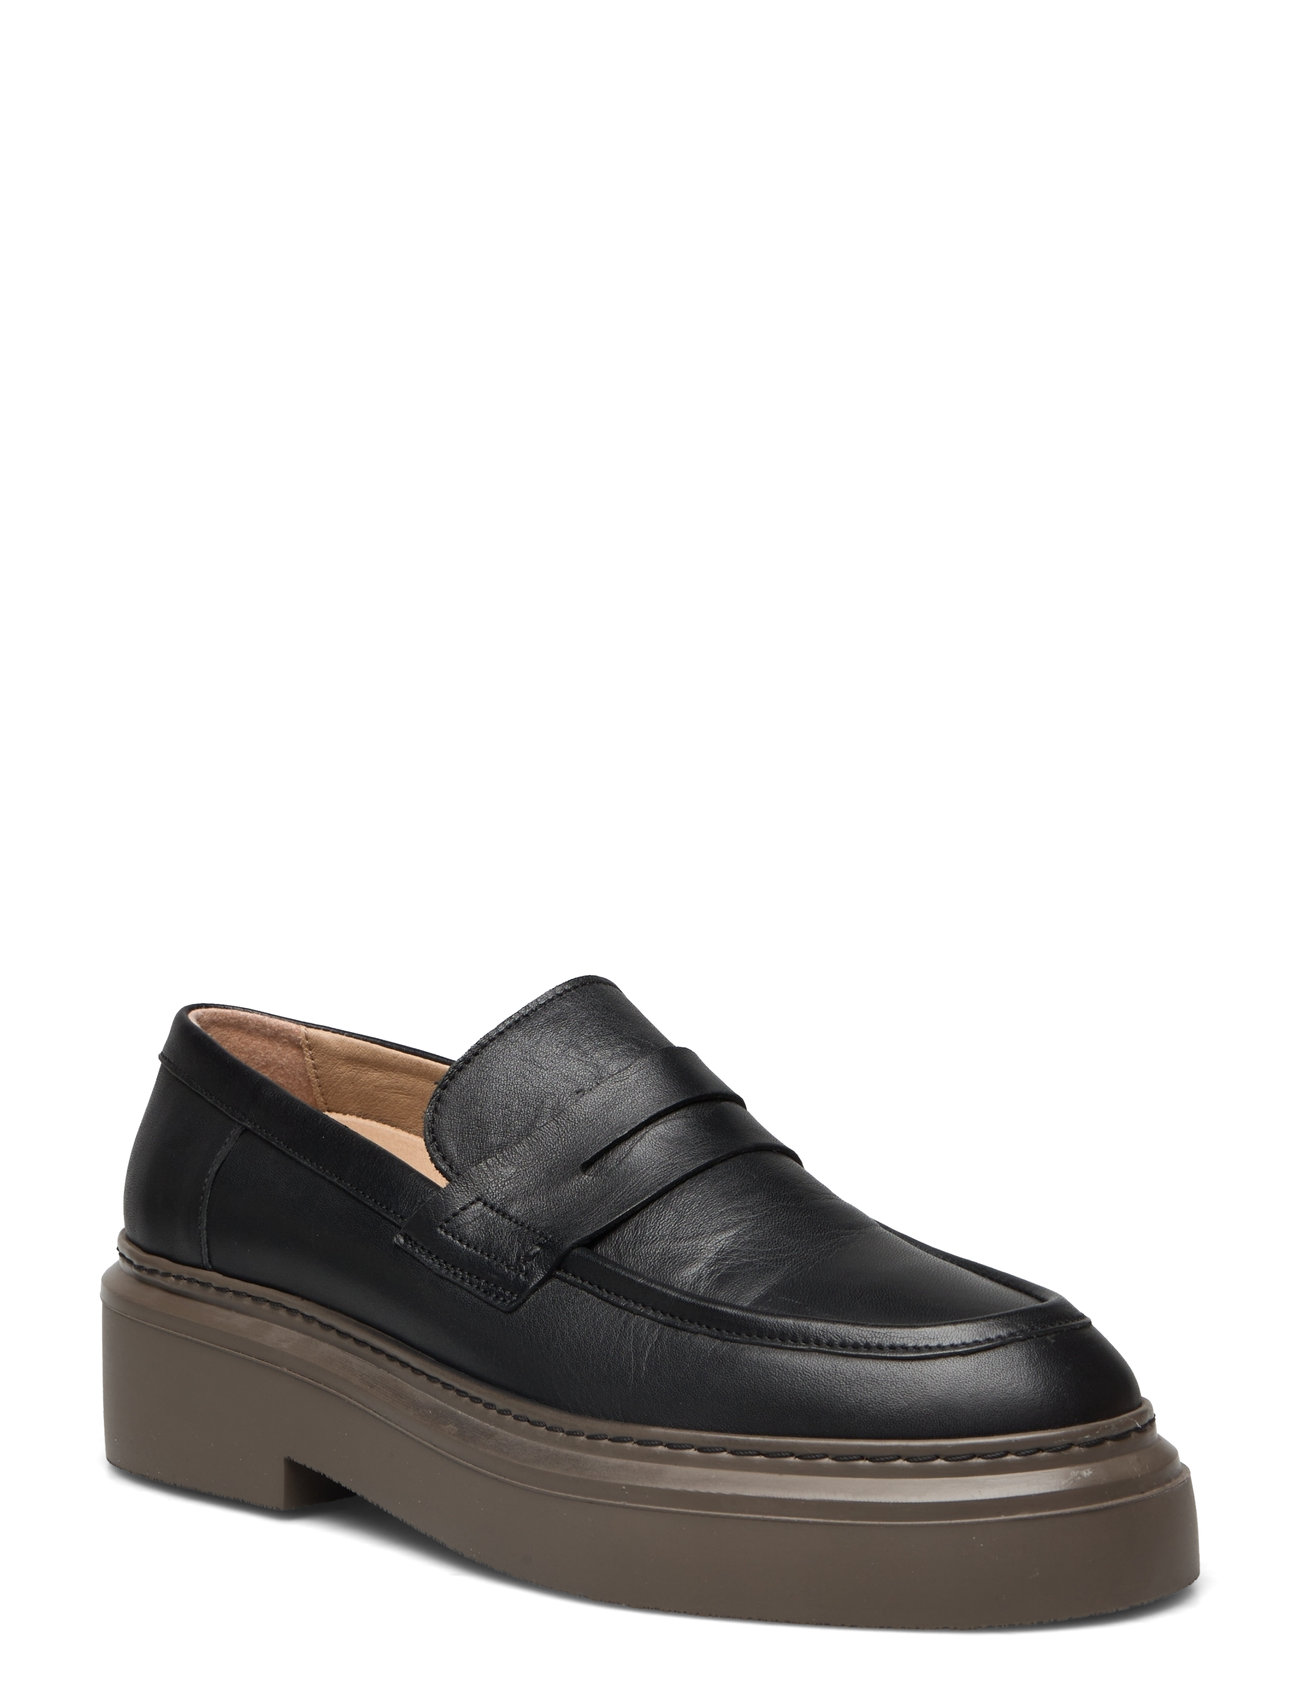 Garment Project June Loafer - Black Leather / Brown Sole Loafers Flade Sko Sort Project*Betinget Tilbud